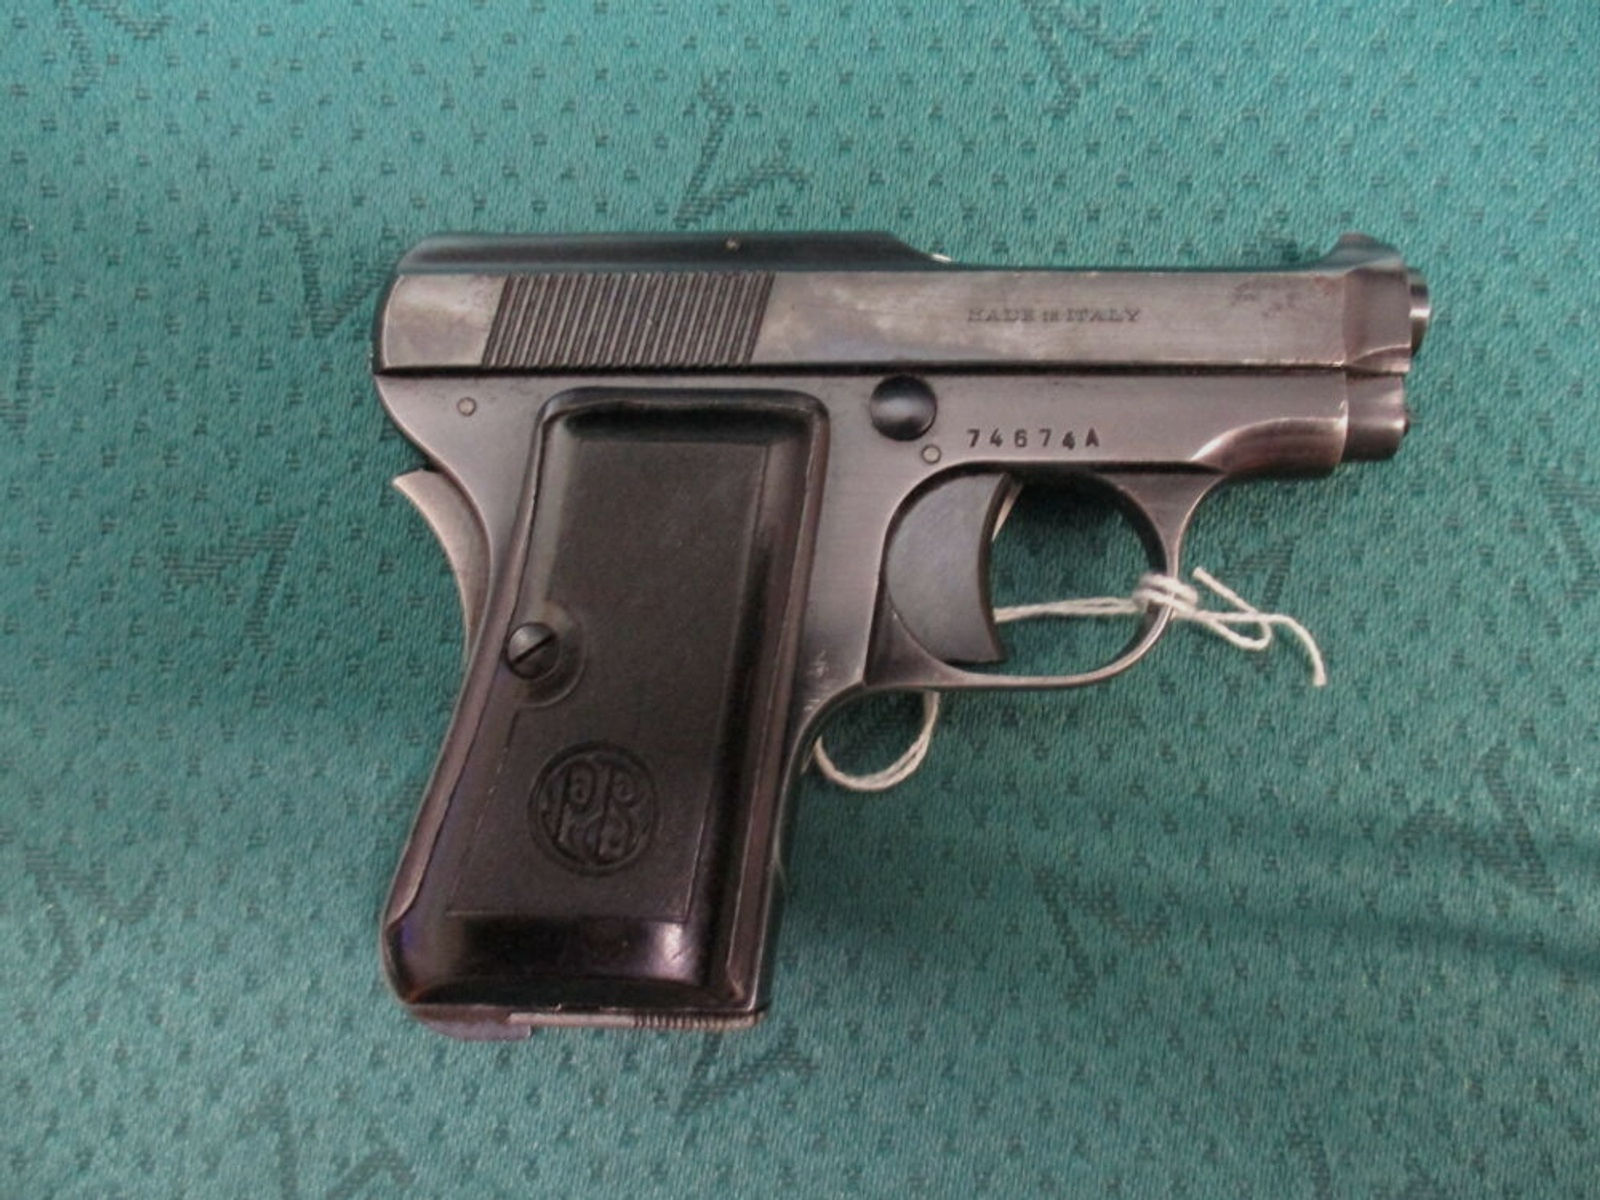 Pistole Beretta 6,35mm mit Handballensicherung